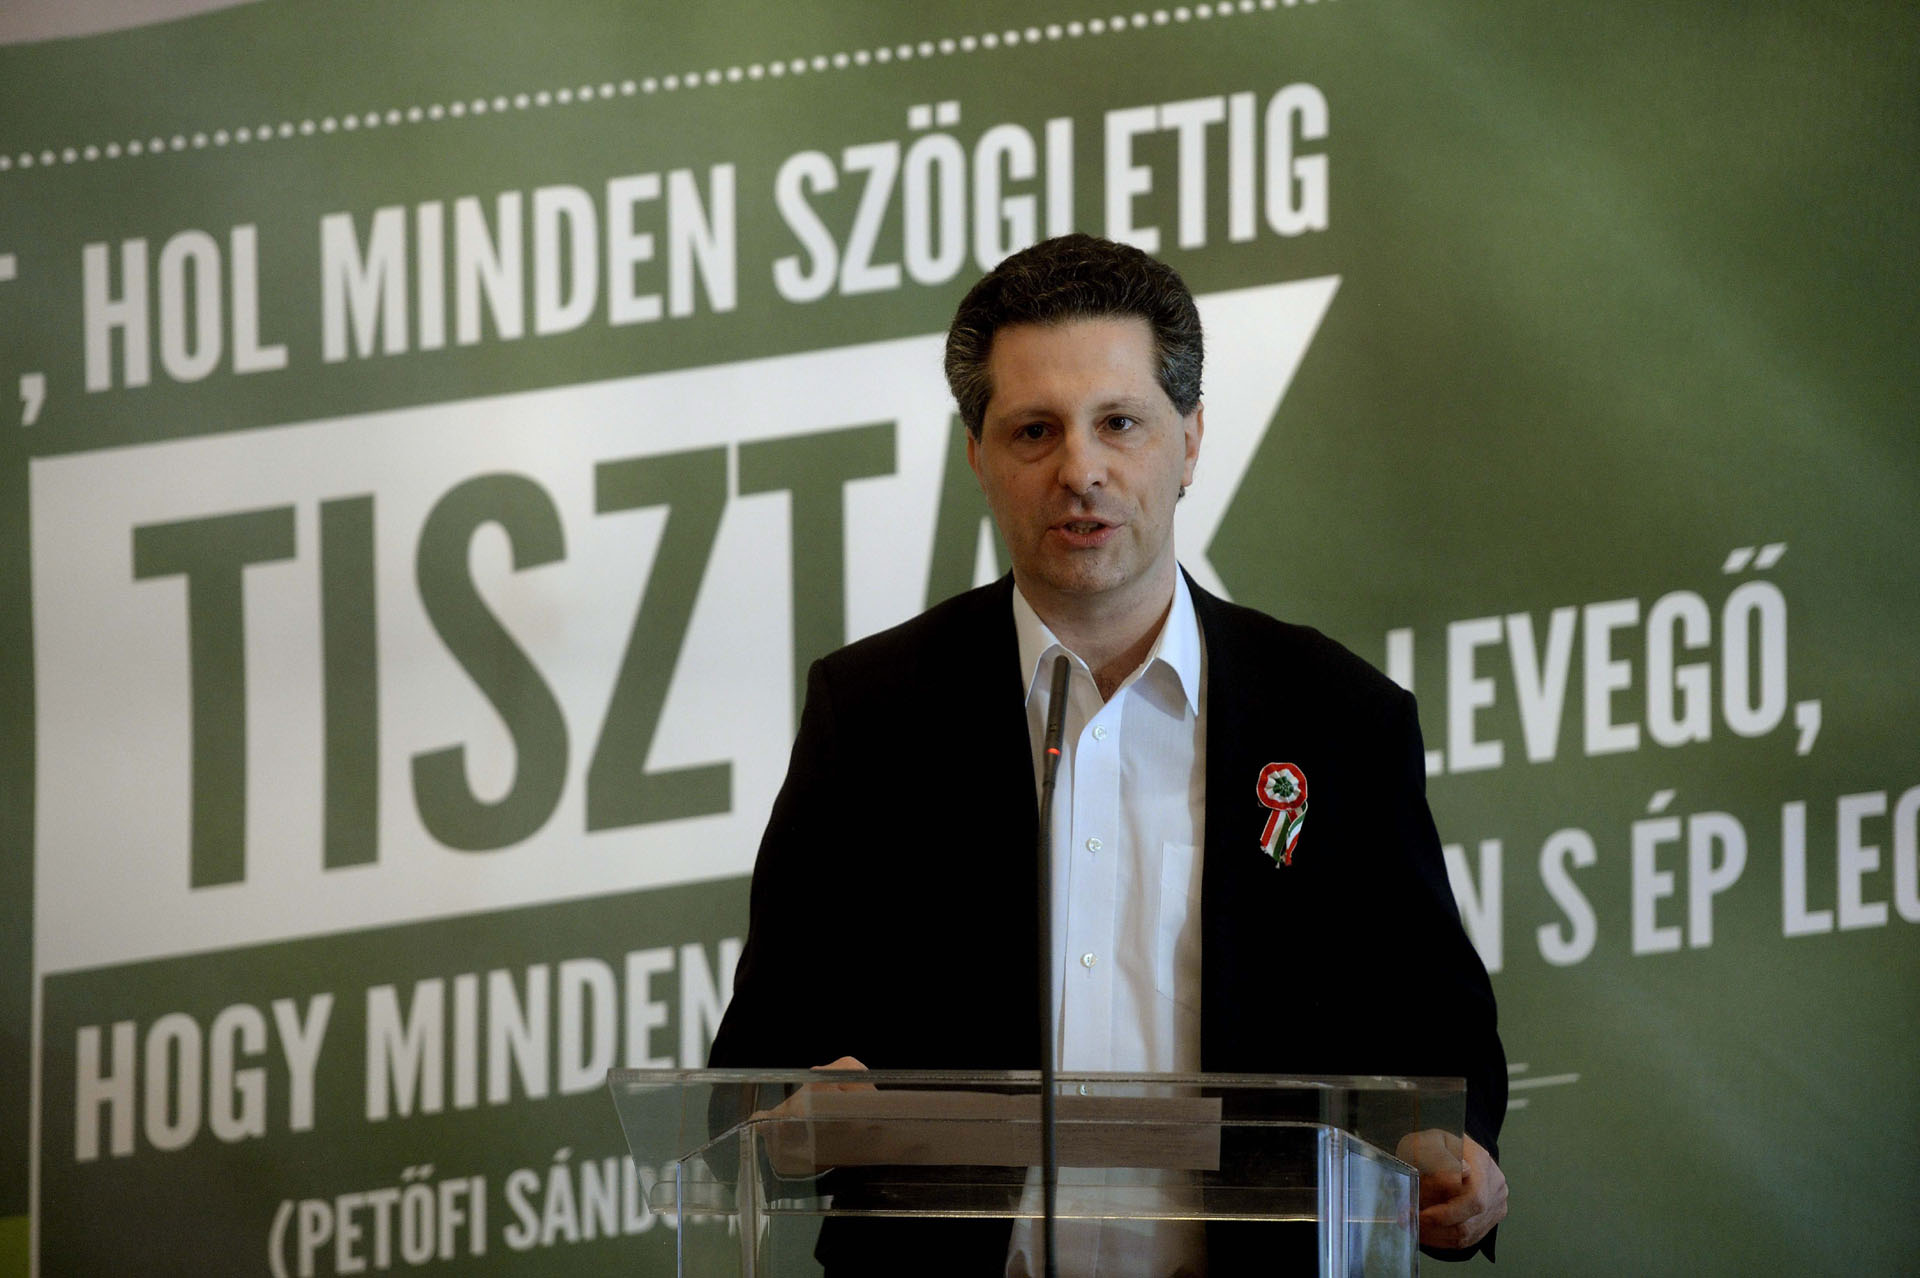 Öt év után utasította el a választási bizottság Schiffer András népszavazási kezdeményezését